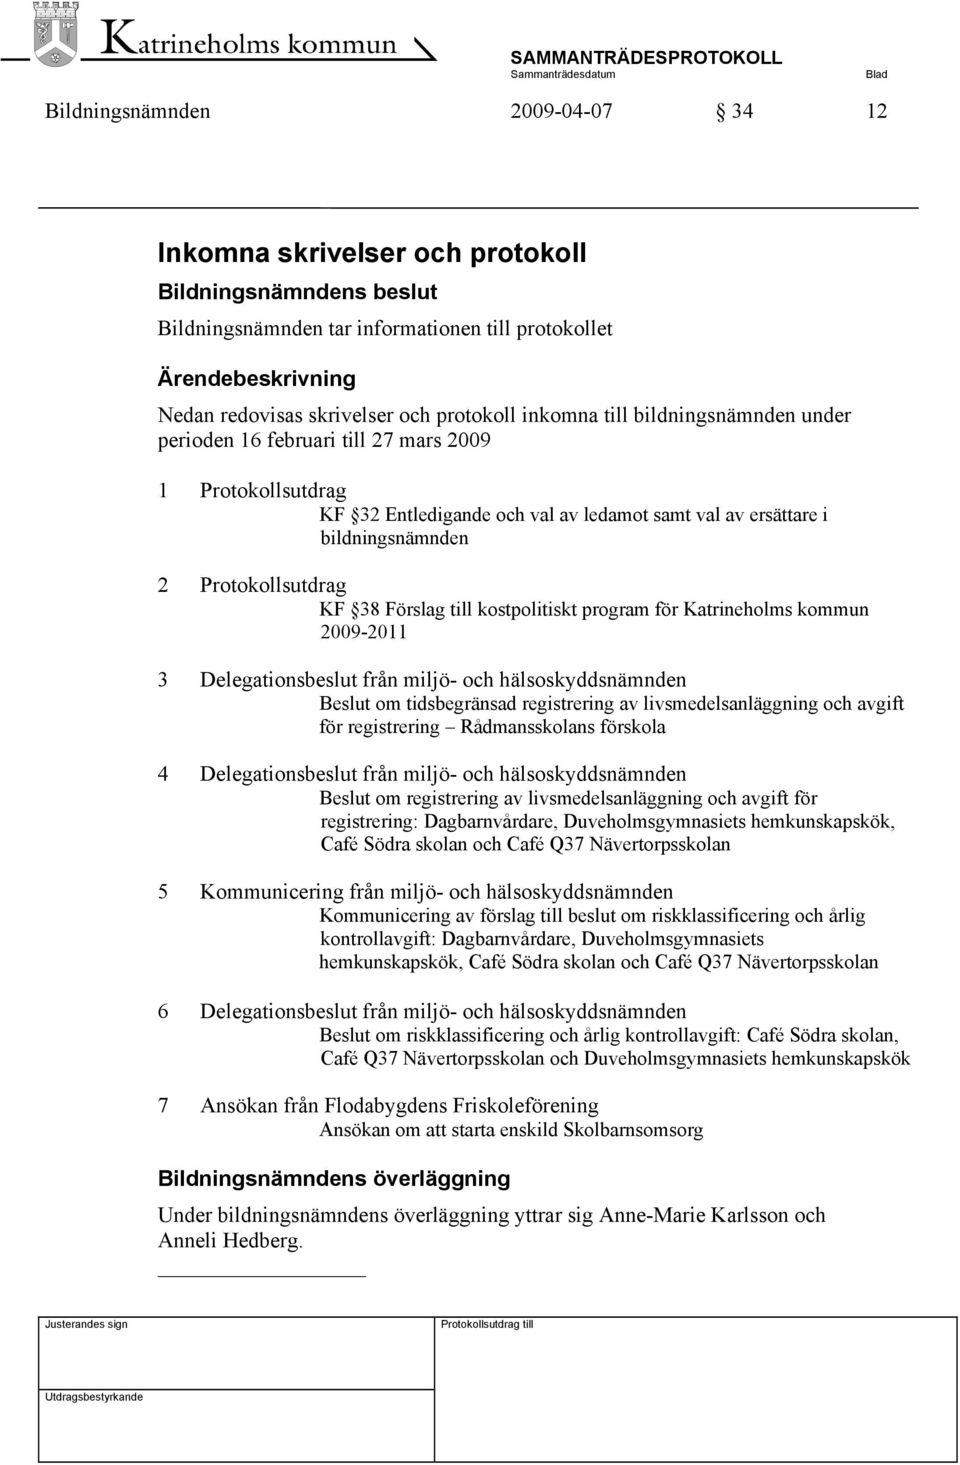 Protokollsutdrag KF 38 Förslag till kostpolitiskt program för Katrineholms kommun 2009-2011 3 Delegationsbeslut från miljö- och hälsoskyddsnämnden Beslut om tidsbegränsad registrering av